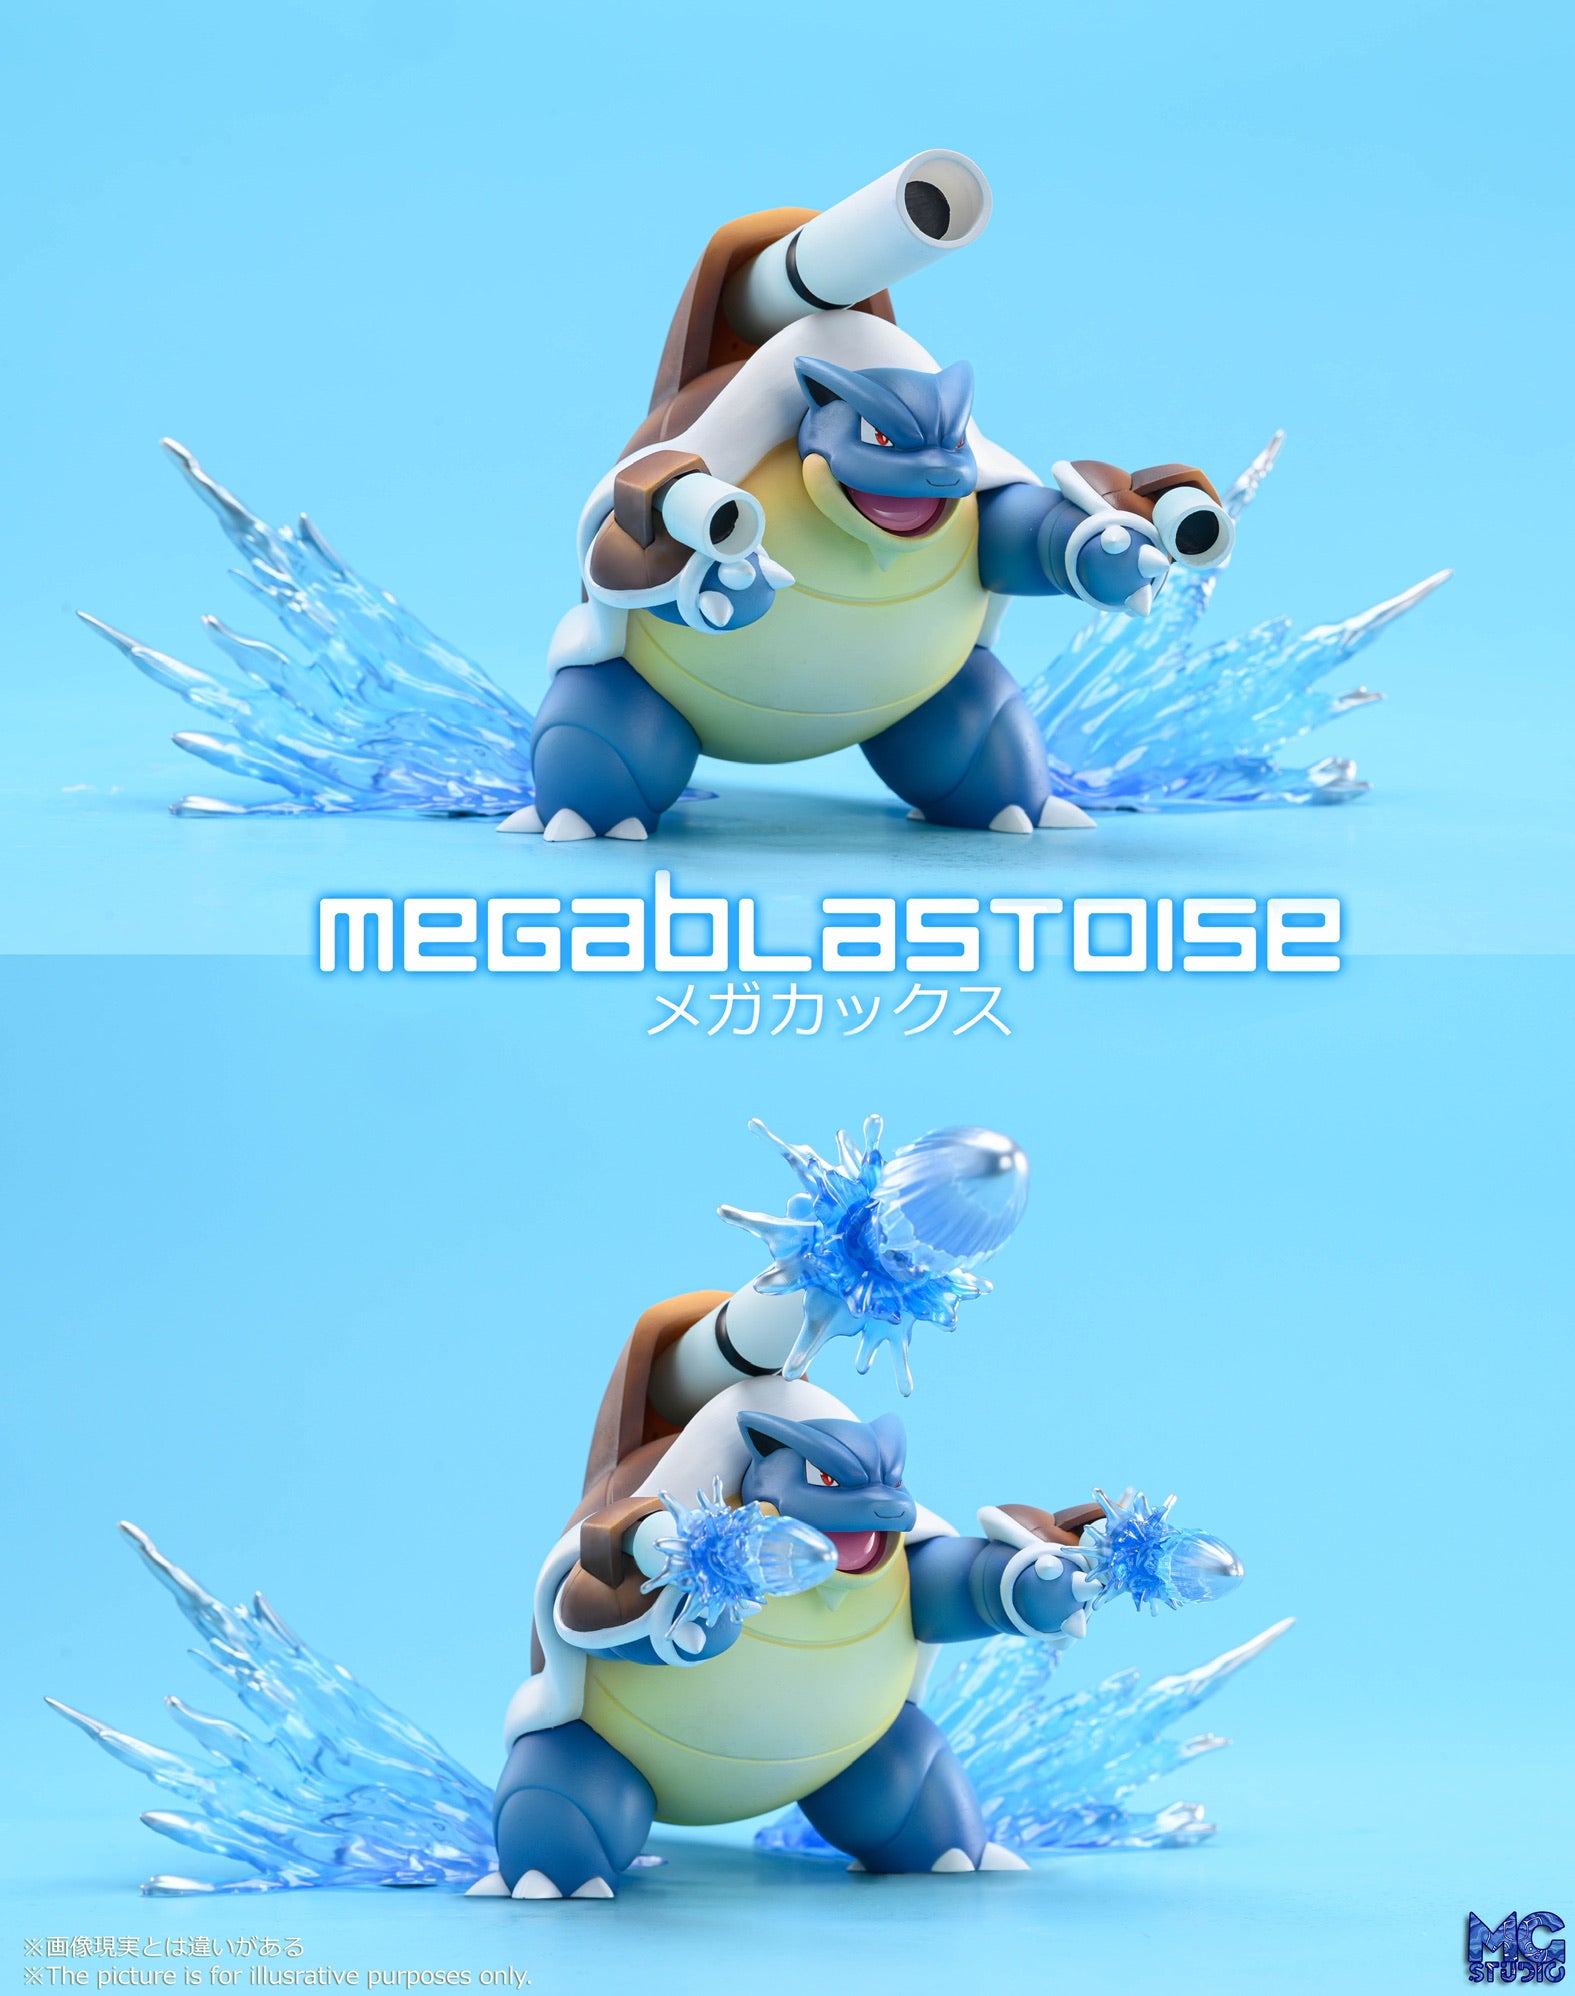 Mega Blastoise, Pokédex